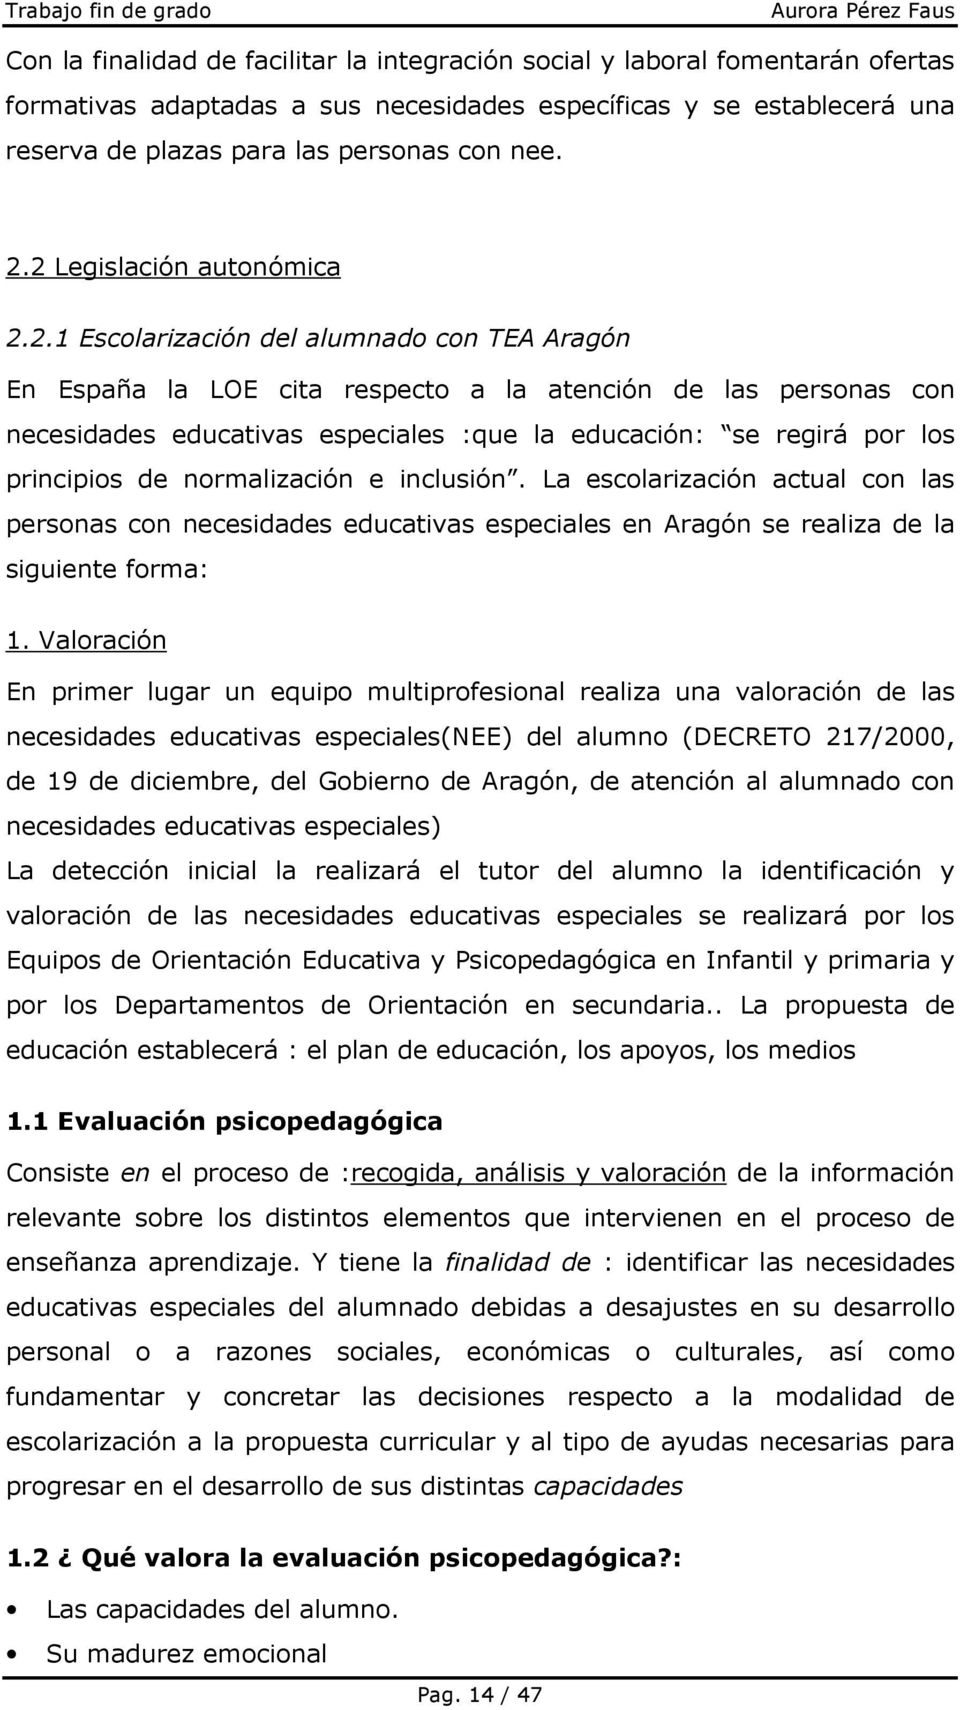 regirá por los principios de normalización e inclusión. La escolarización actual con las personas con necesidades educativas especiales en Aragón se realiza de la siguiente forma: 1.